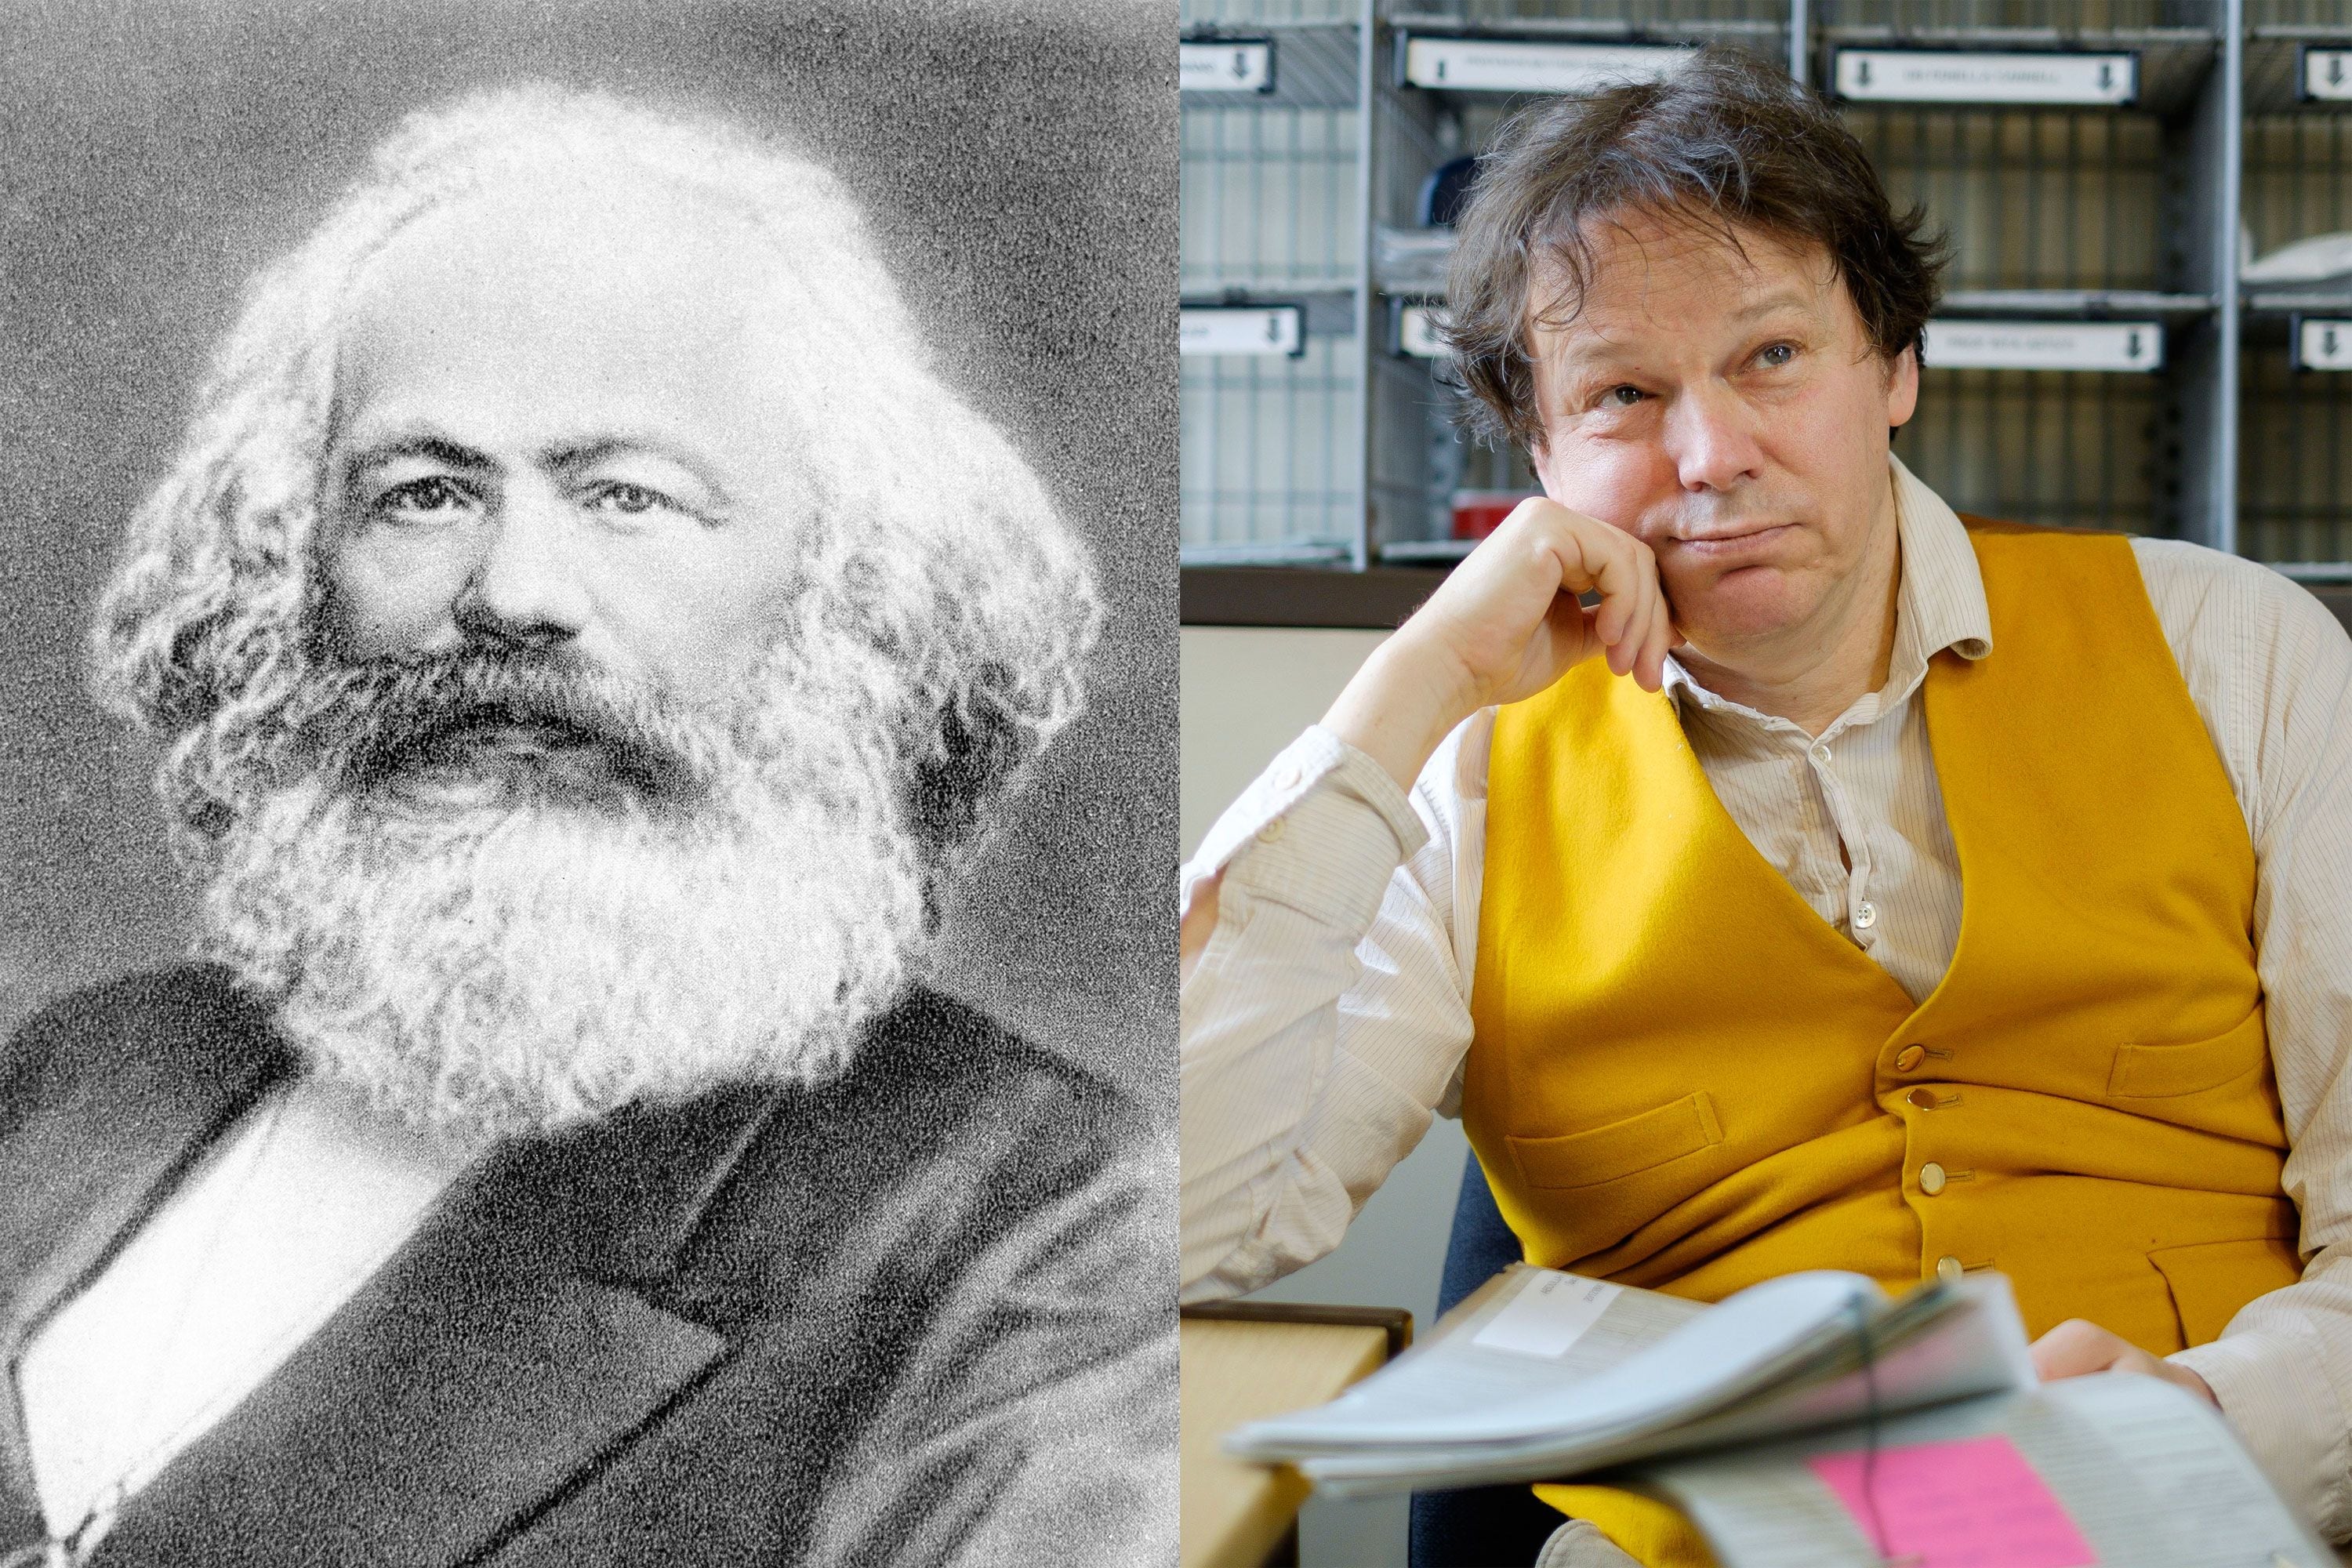 左：草稿や研究ノートの発掘が進み、新たな顔が見えてきたカール・マルクス（1818〜1883）(C)共同通信イメージズ 右：文化人類学者でありアクティビストとして社会運動でも活躍したデヴィッド・グレーバー（1961〜2020）(C)Eyevine／アフロ